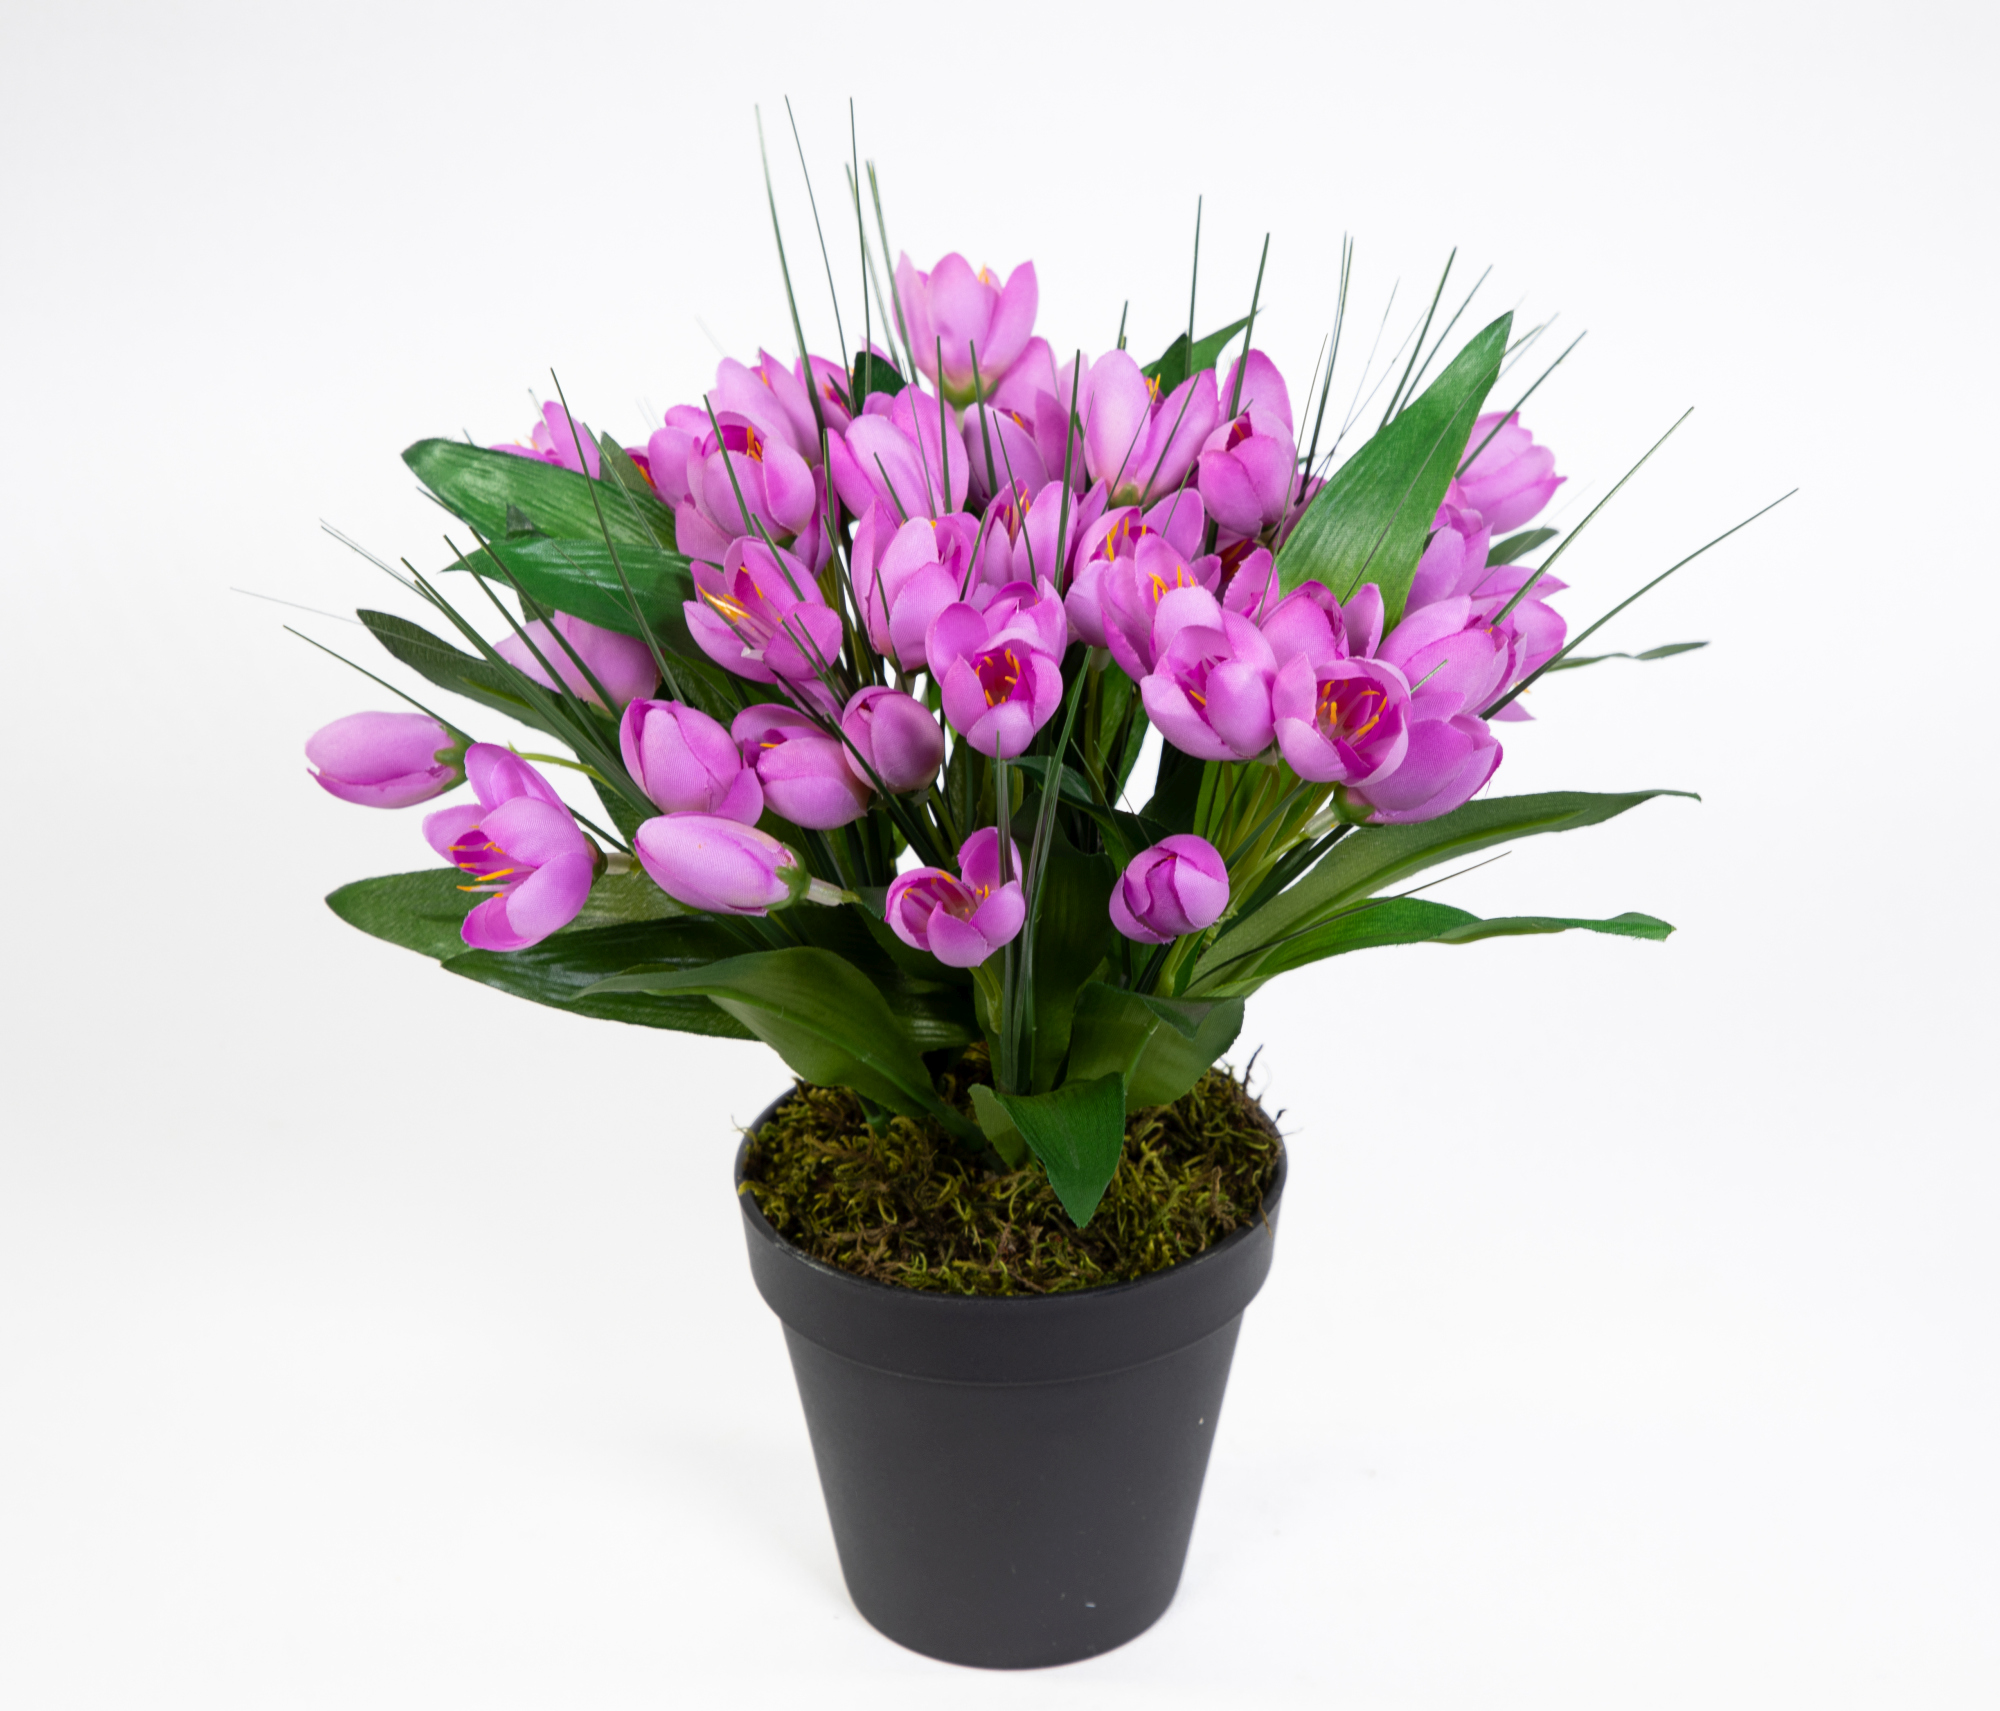 Krokusbusch 28cm lila im Topf PM Kunstpflanzen Kunstblumen künstlicher Crocus Krokus Blumen